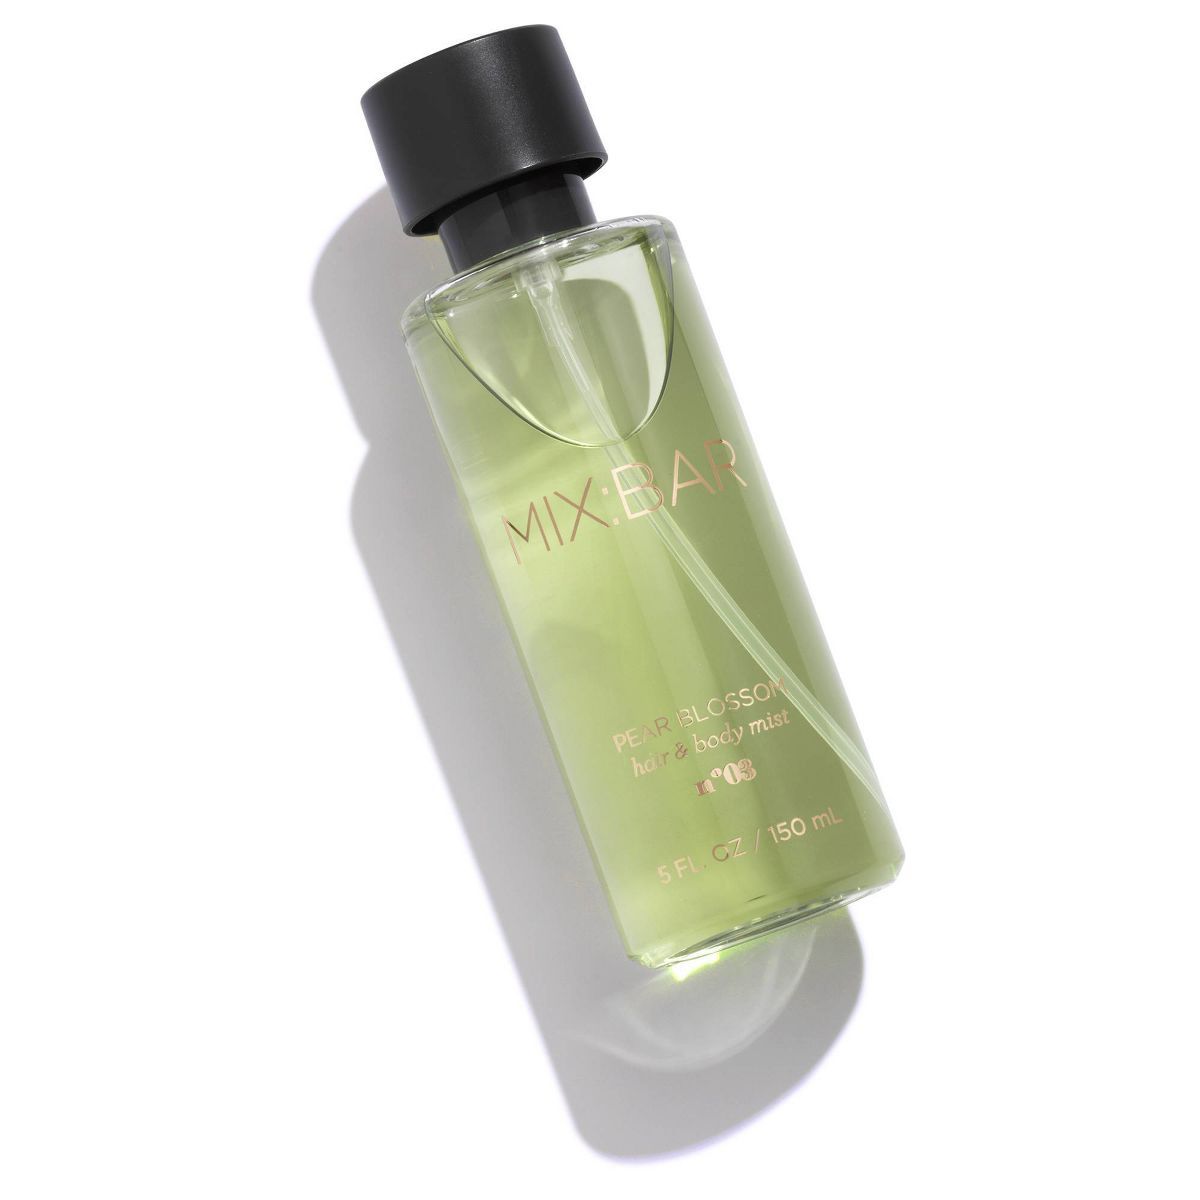 MIX:BAR Pear Blossom Hair & Body Mist - Clean, Vegan Body Spray Fragrance & Hair Perfume for Wome... | Target